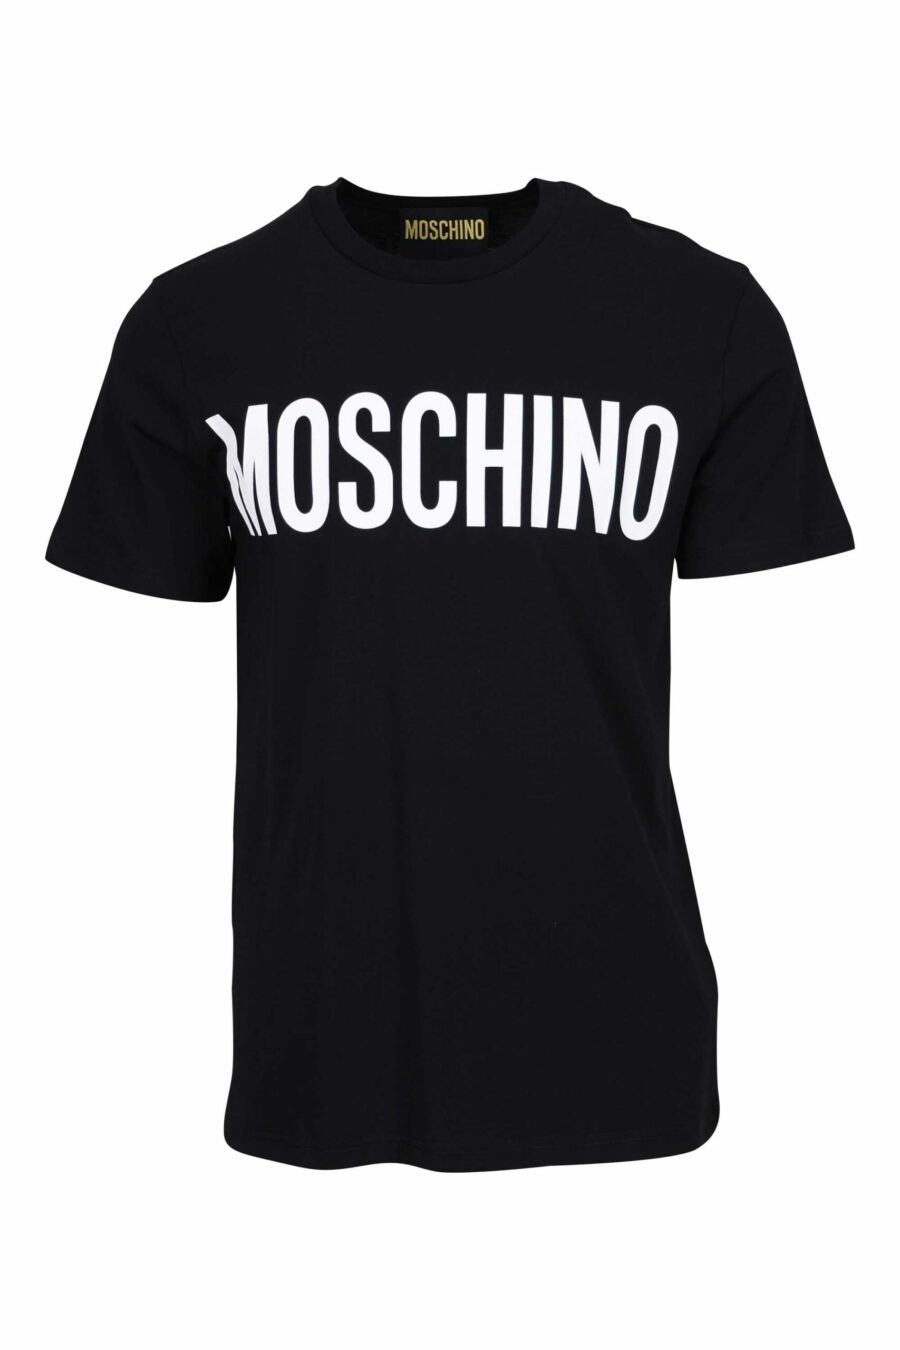 Camiseta negra "oversize" de algodón orgánico con maxilogo negro clásico - 667113752051 scaled